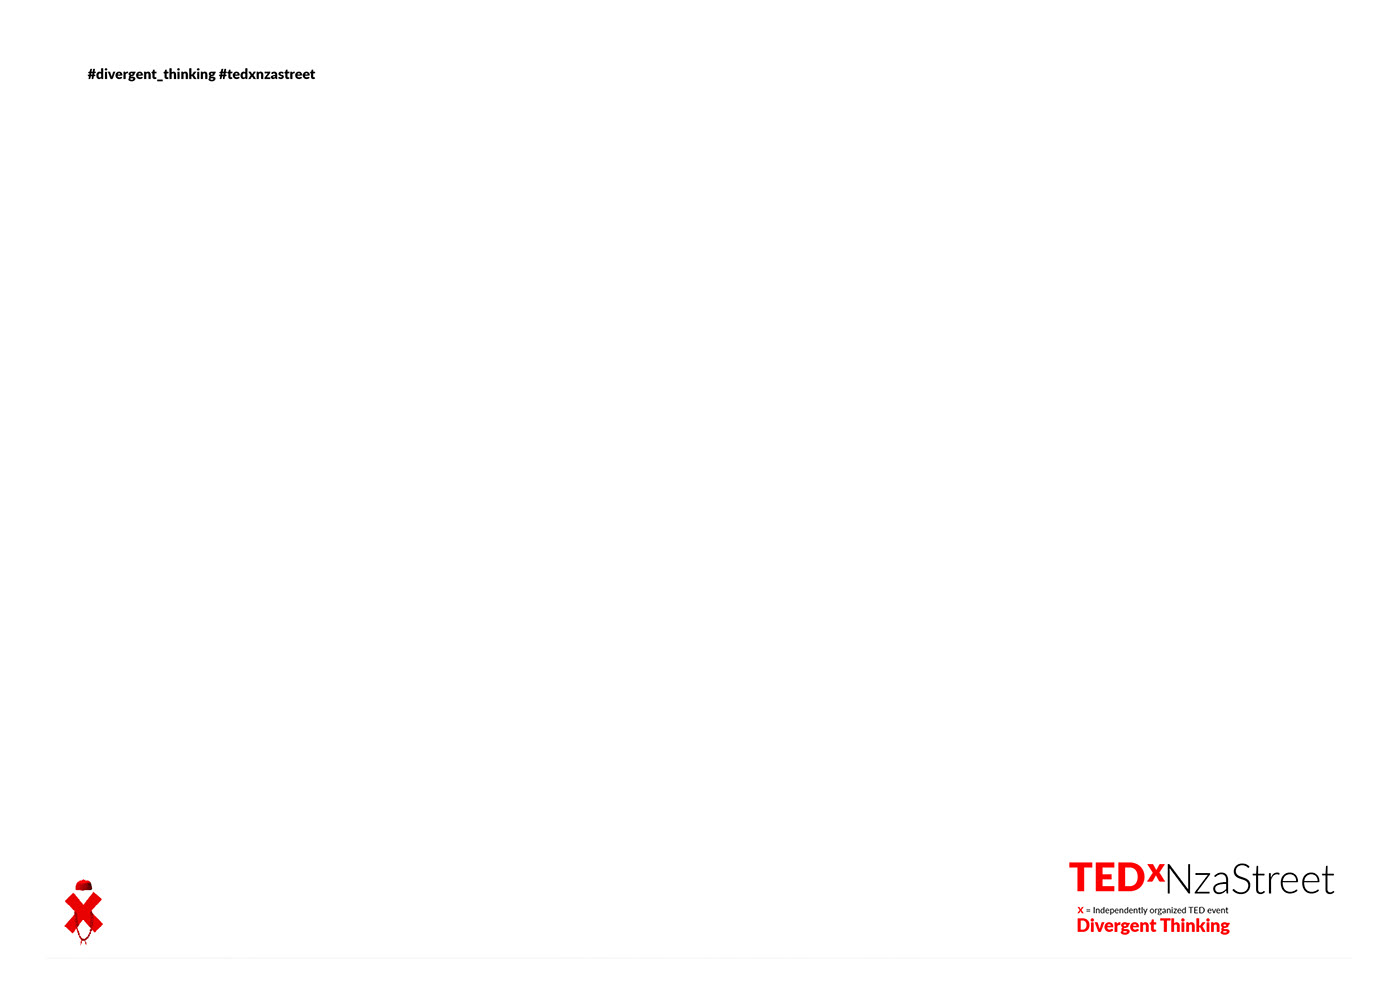 TED TEDx tedxnzastreet graphic design  jotter brochure Booklet Event Branding branding  design